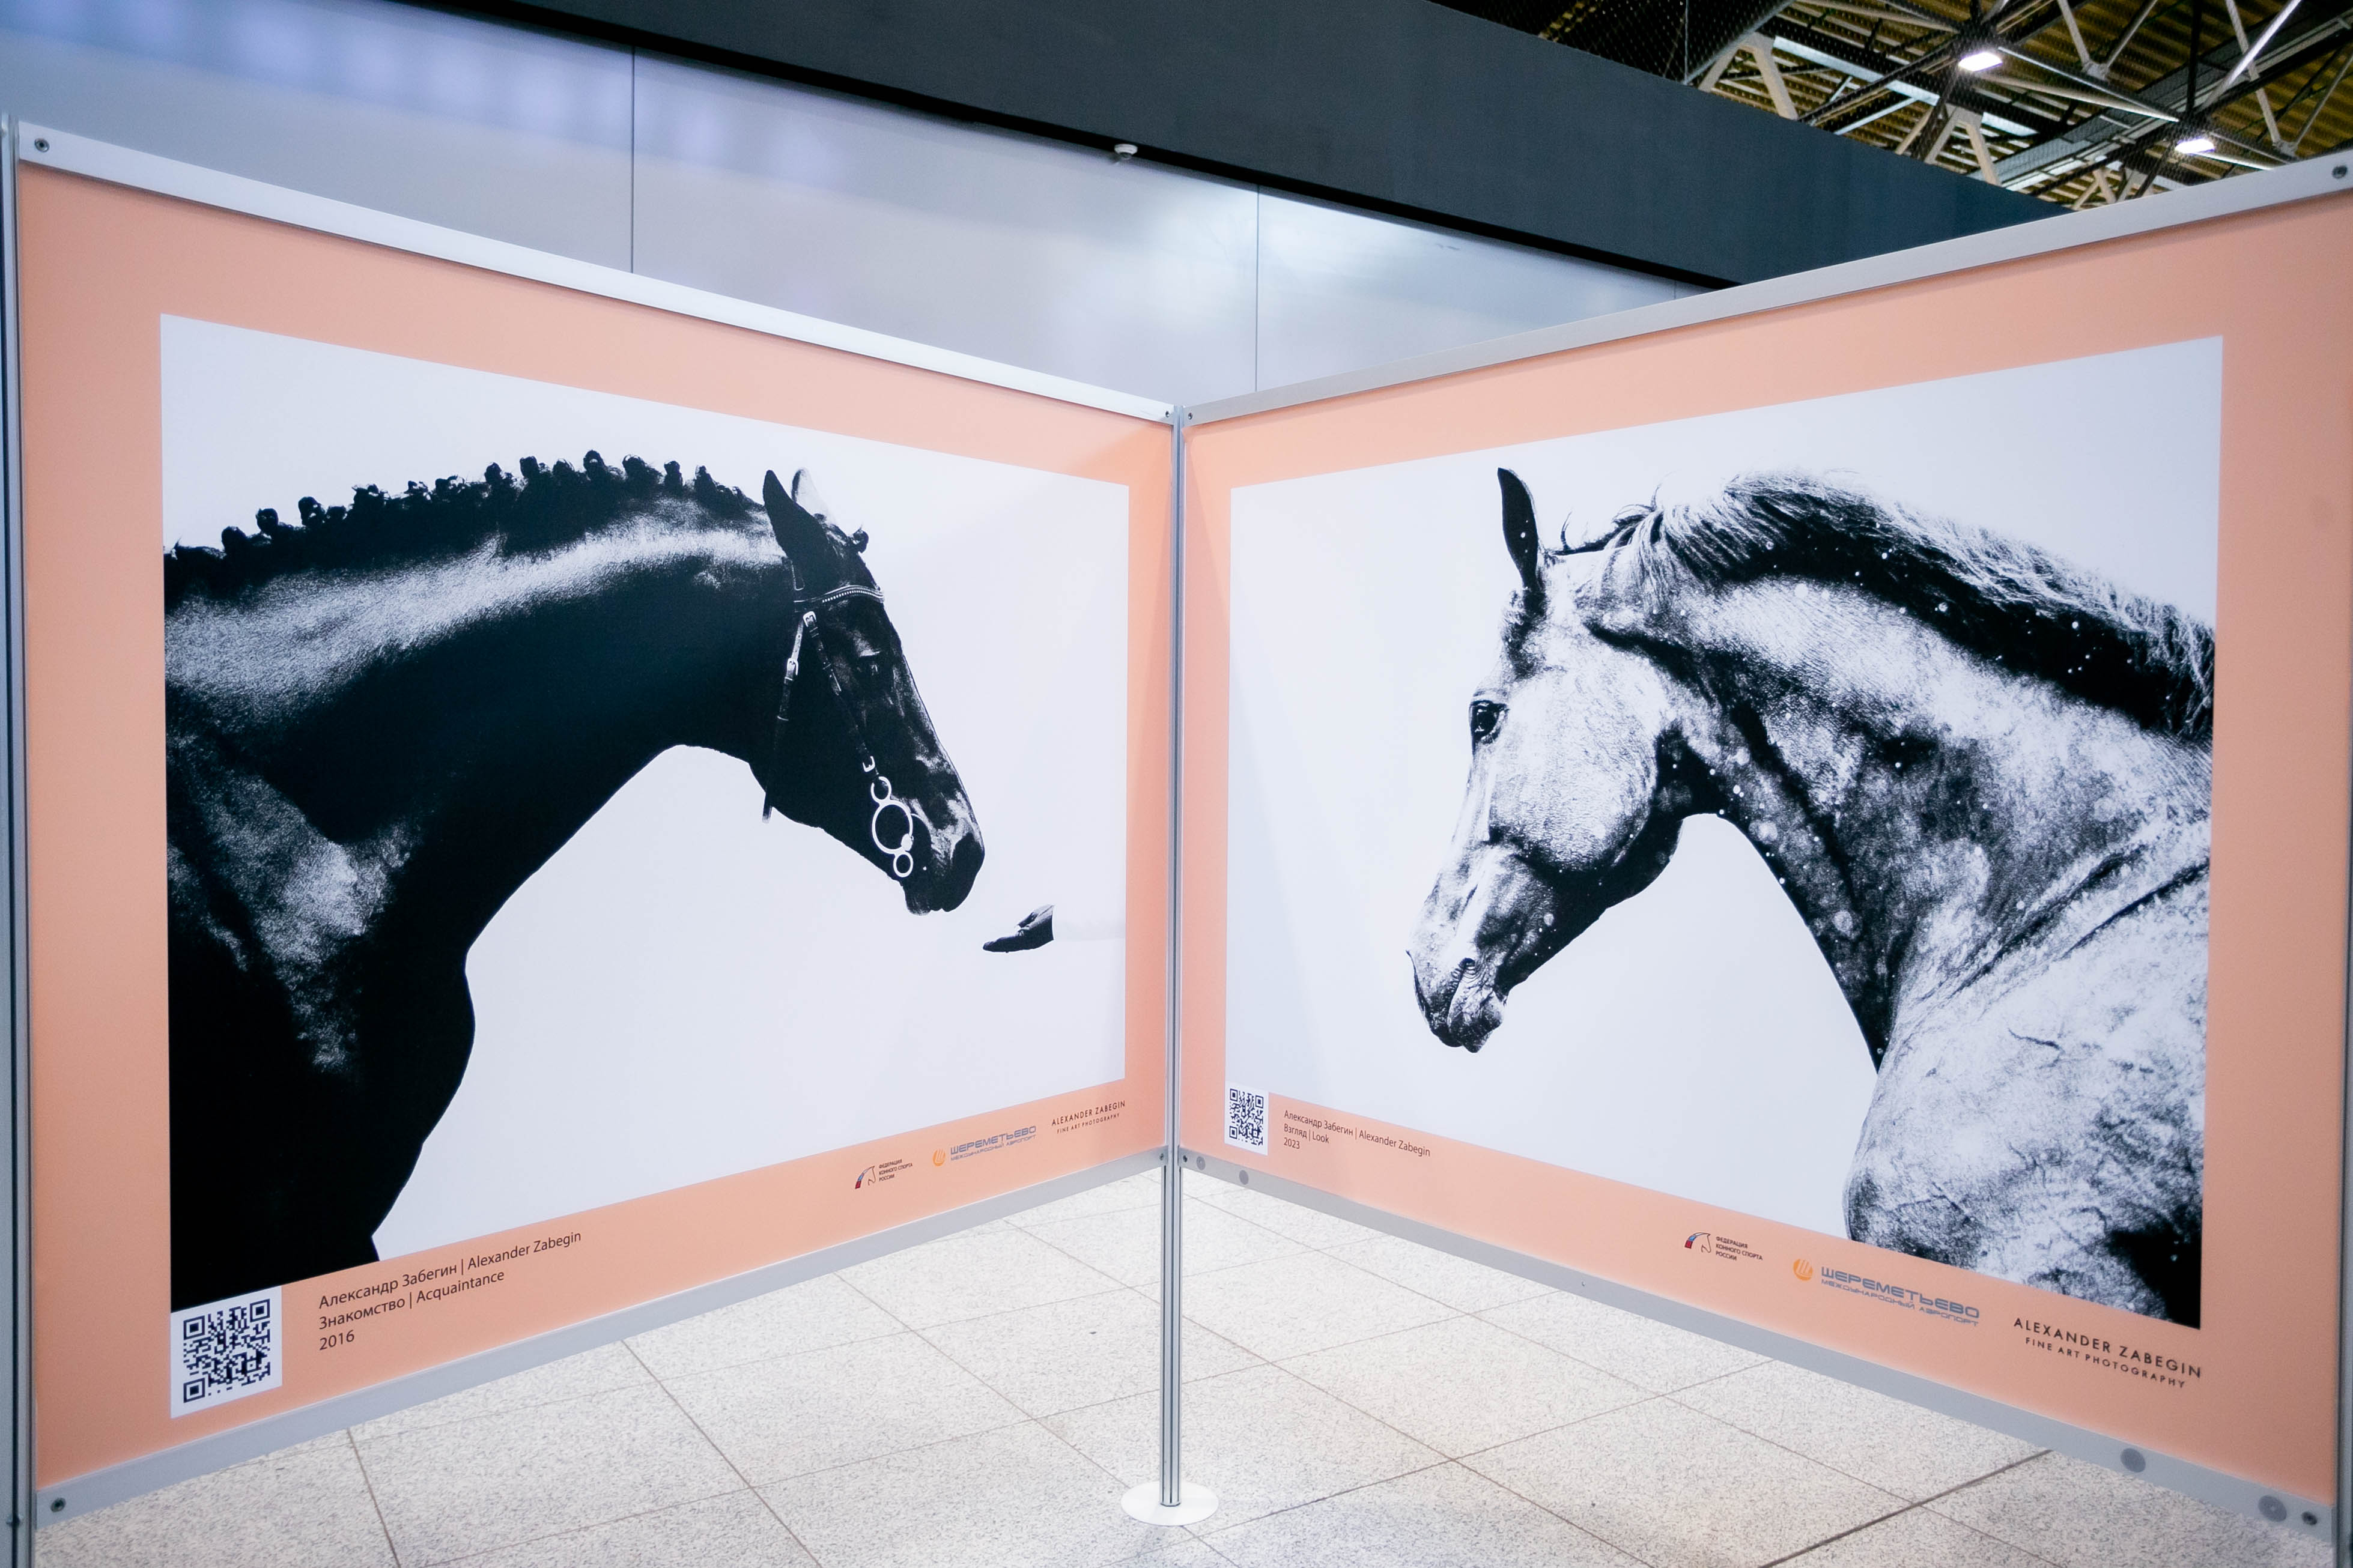 Выставка работ фотографа Александра Забегина открылась в аэропорту Шереметьево